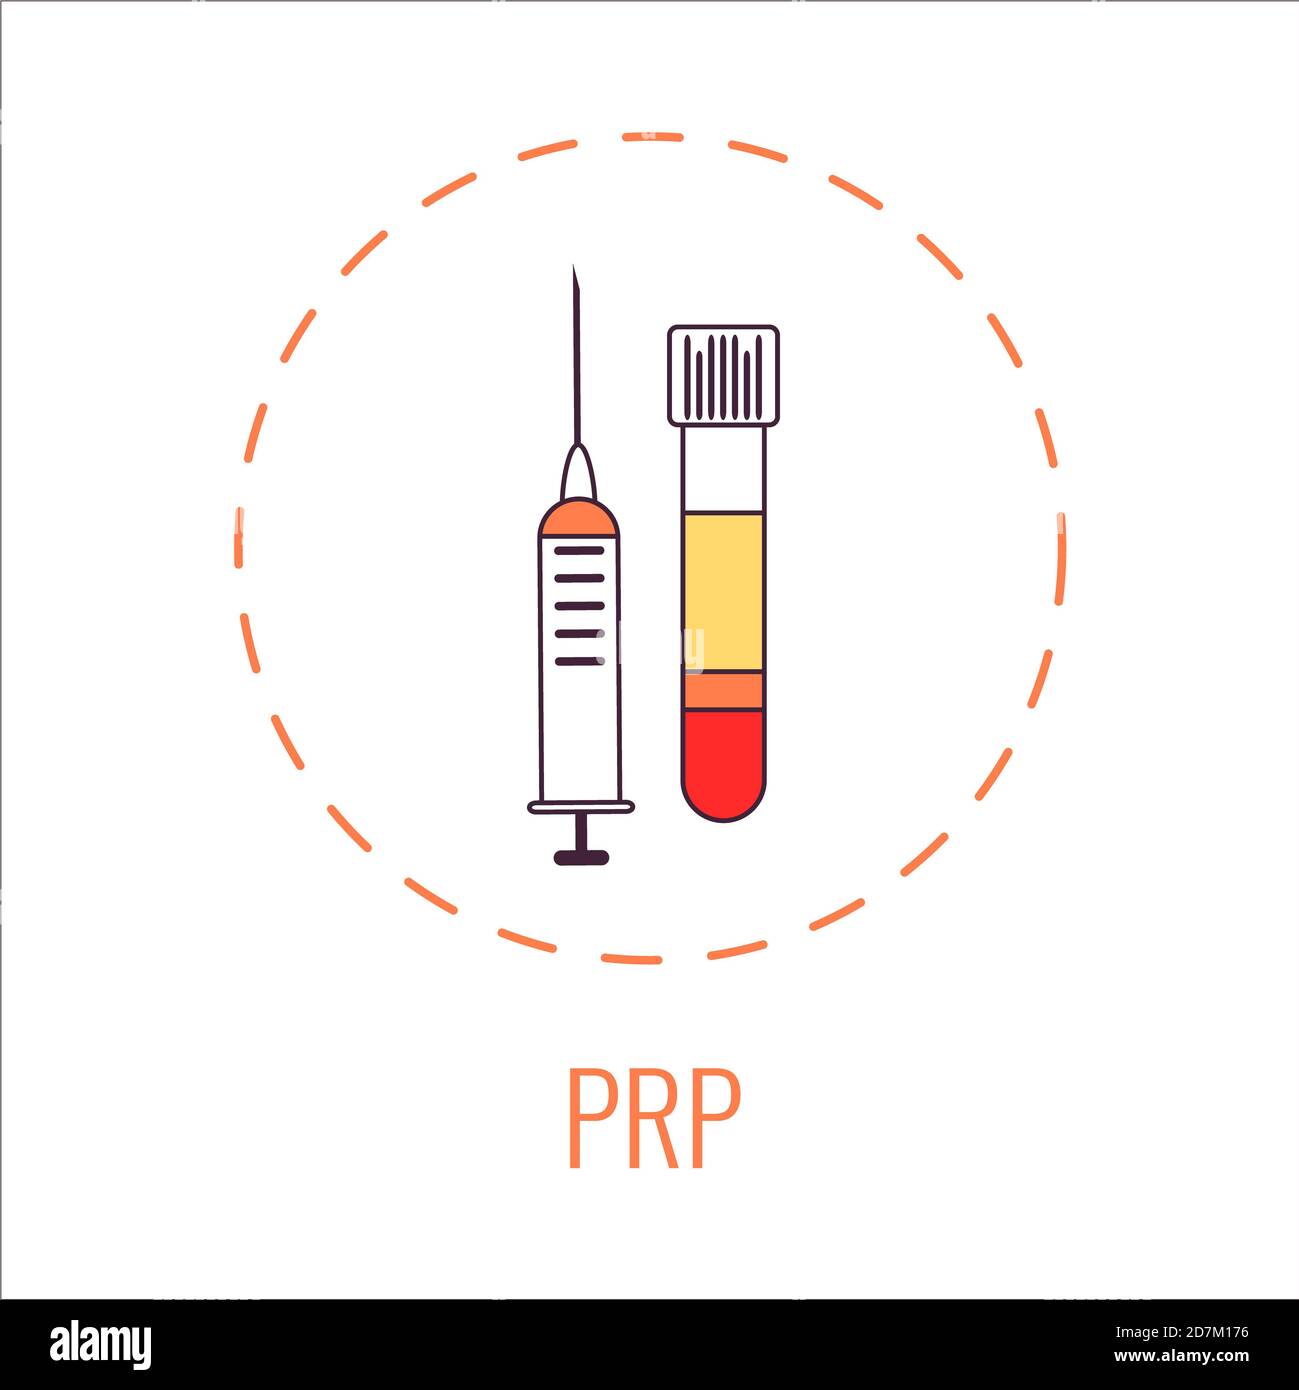 Traitement au plasma riche en plaquettes (PRP), illustration. Banque D'Images